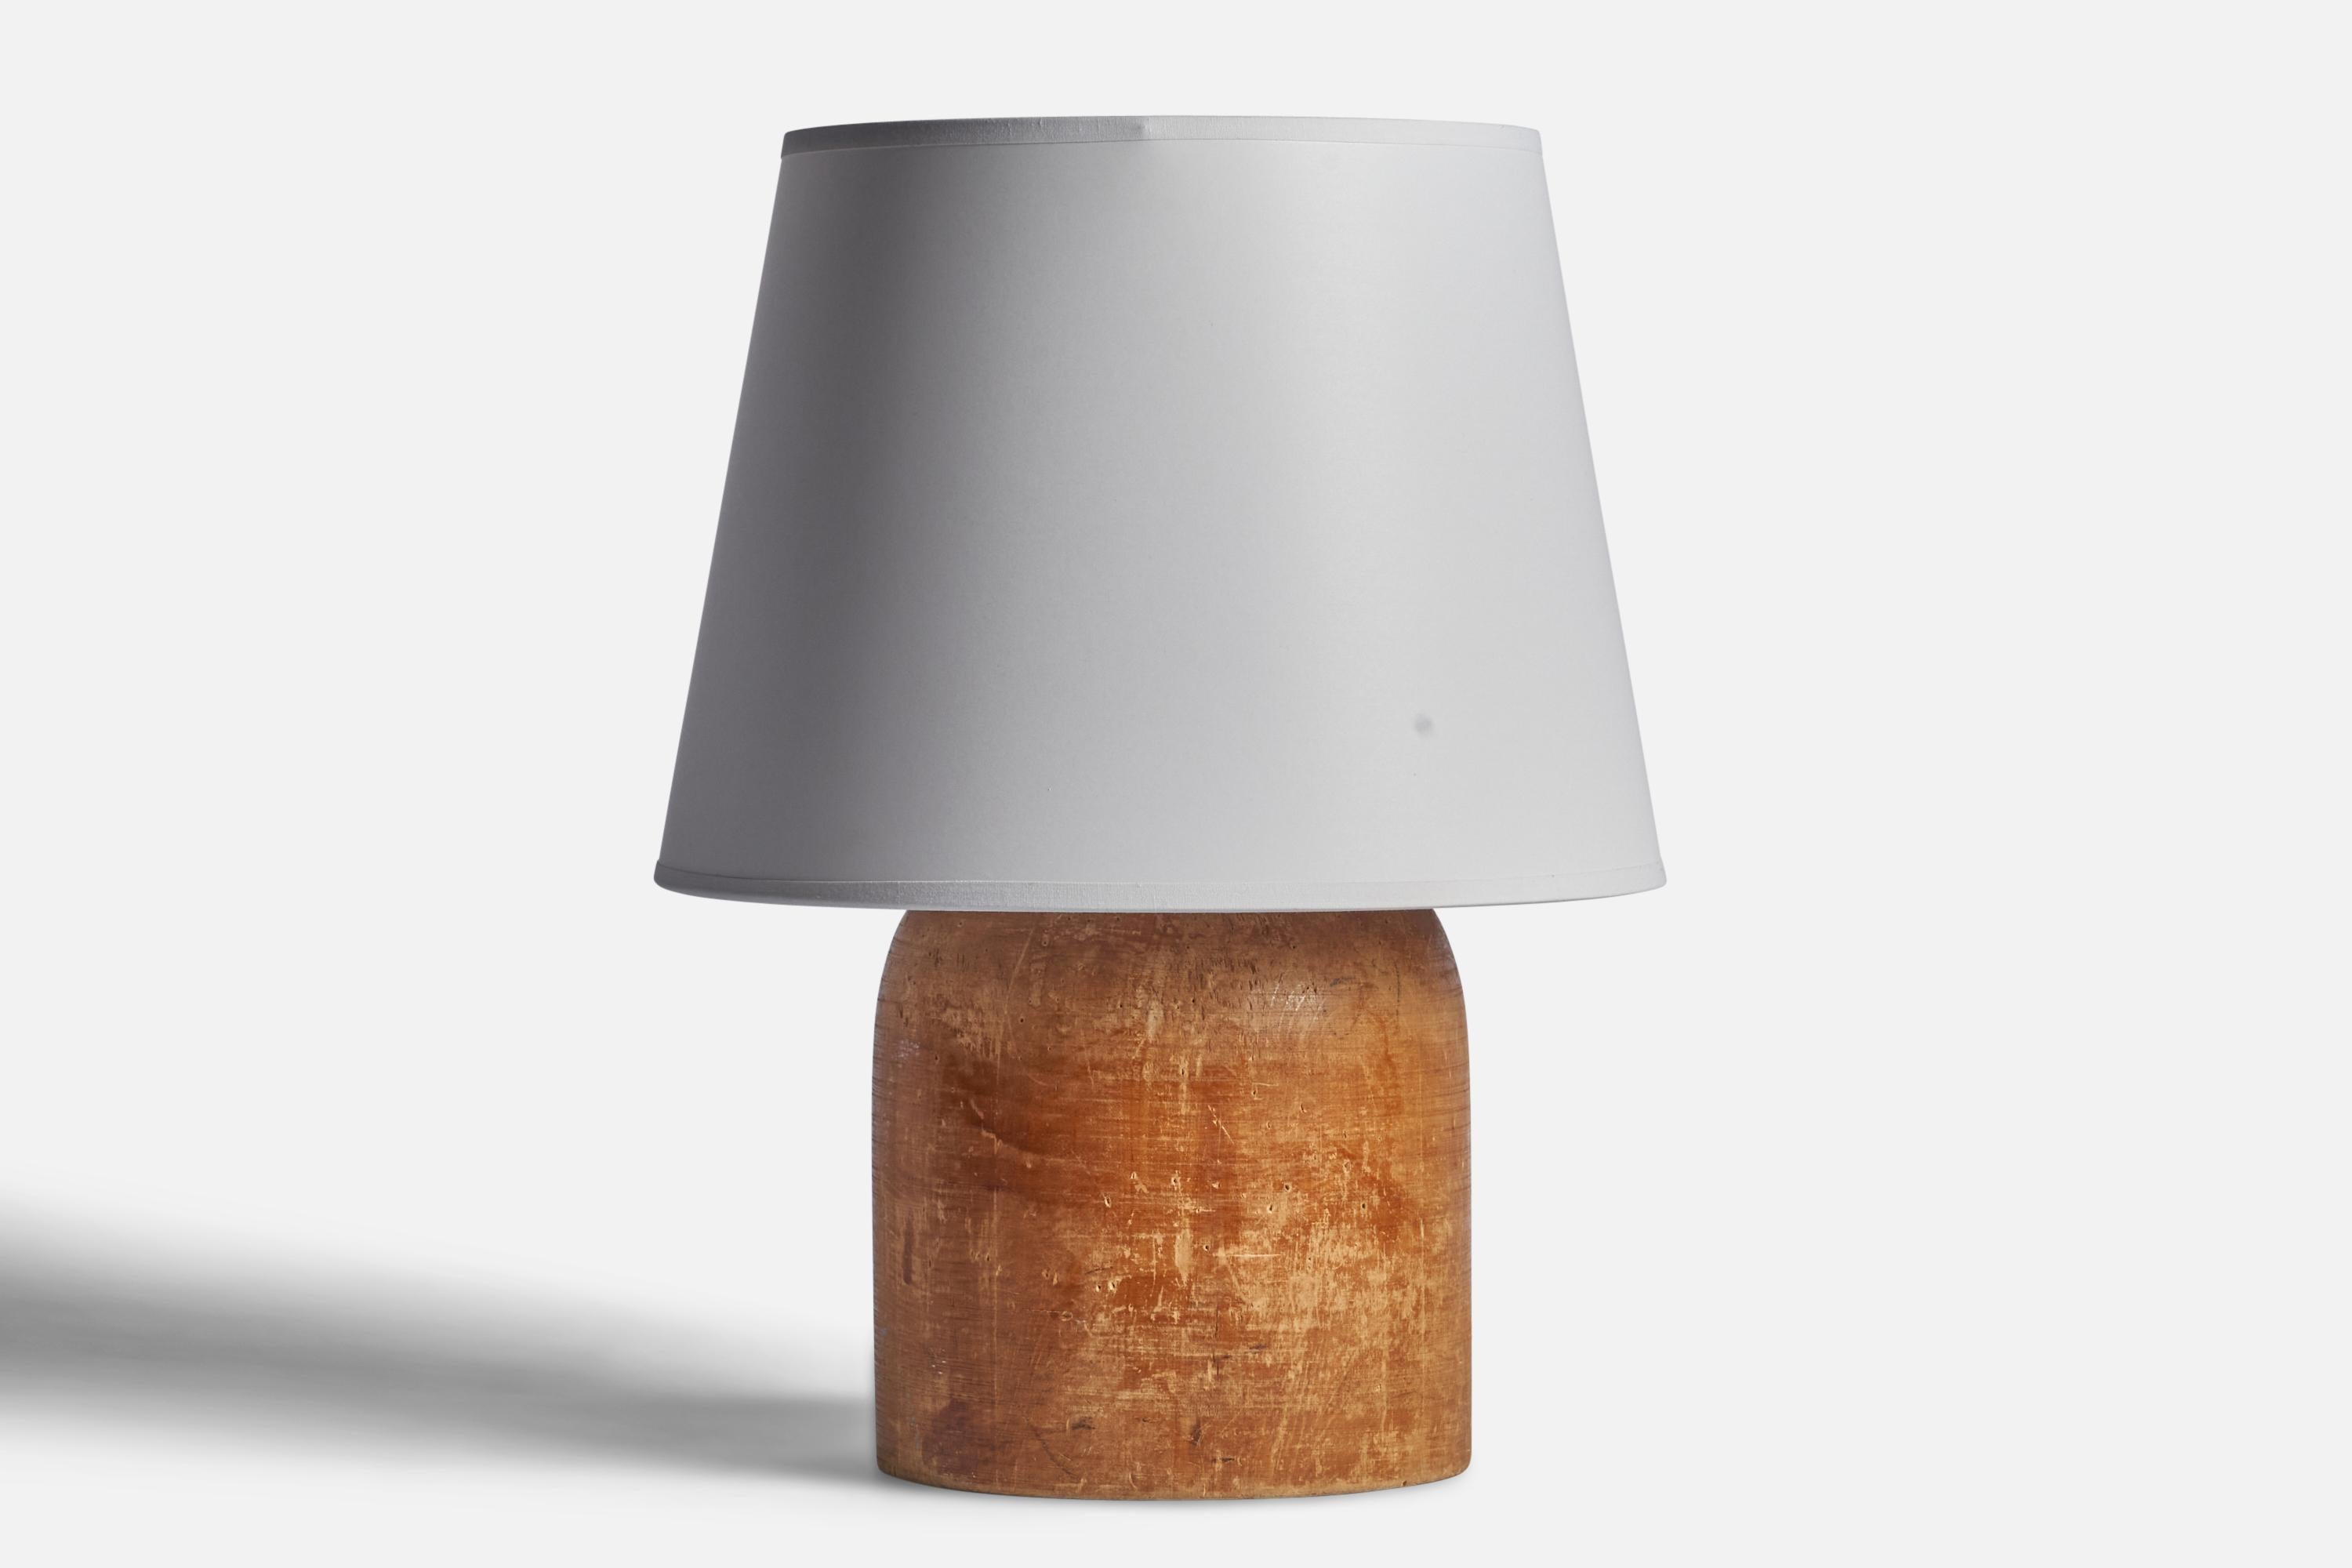 Lampe de table en bois conçue et produite en Suède, années 1940.

Dimensions de la lampe (pouces) : 11.5